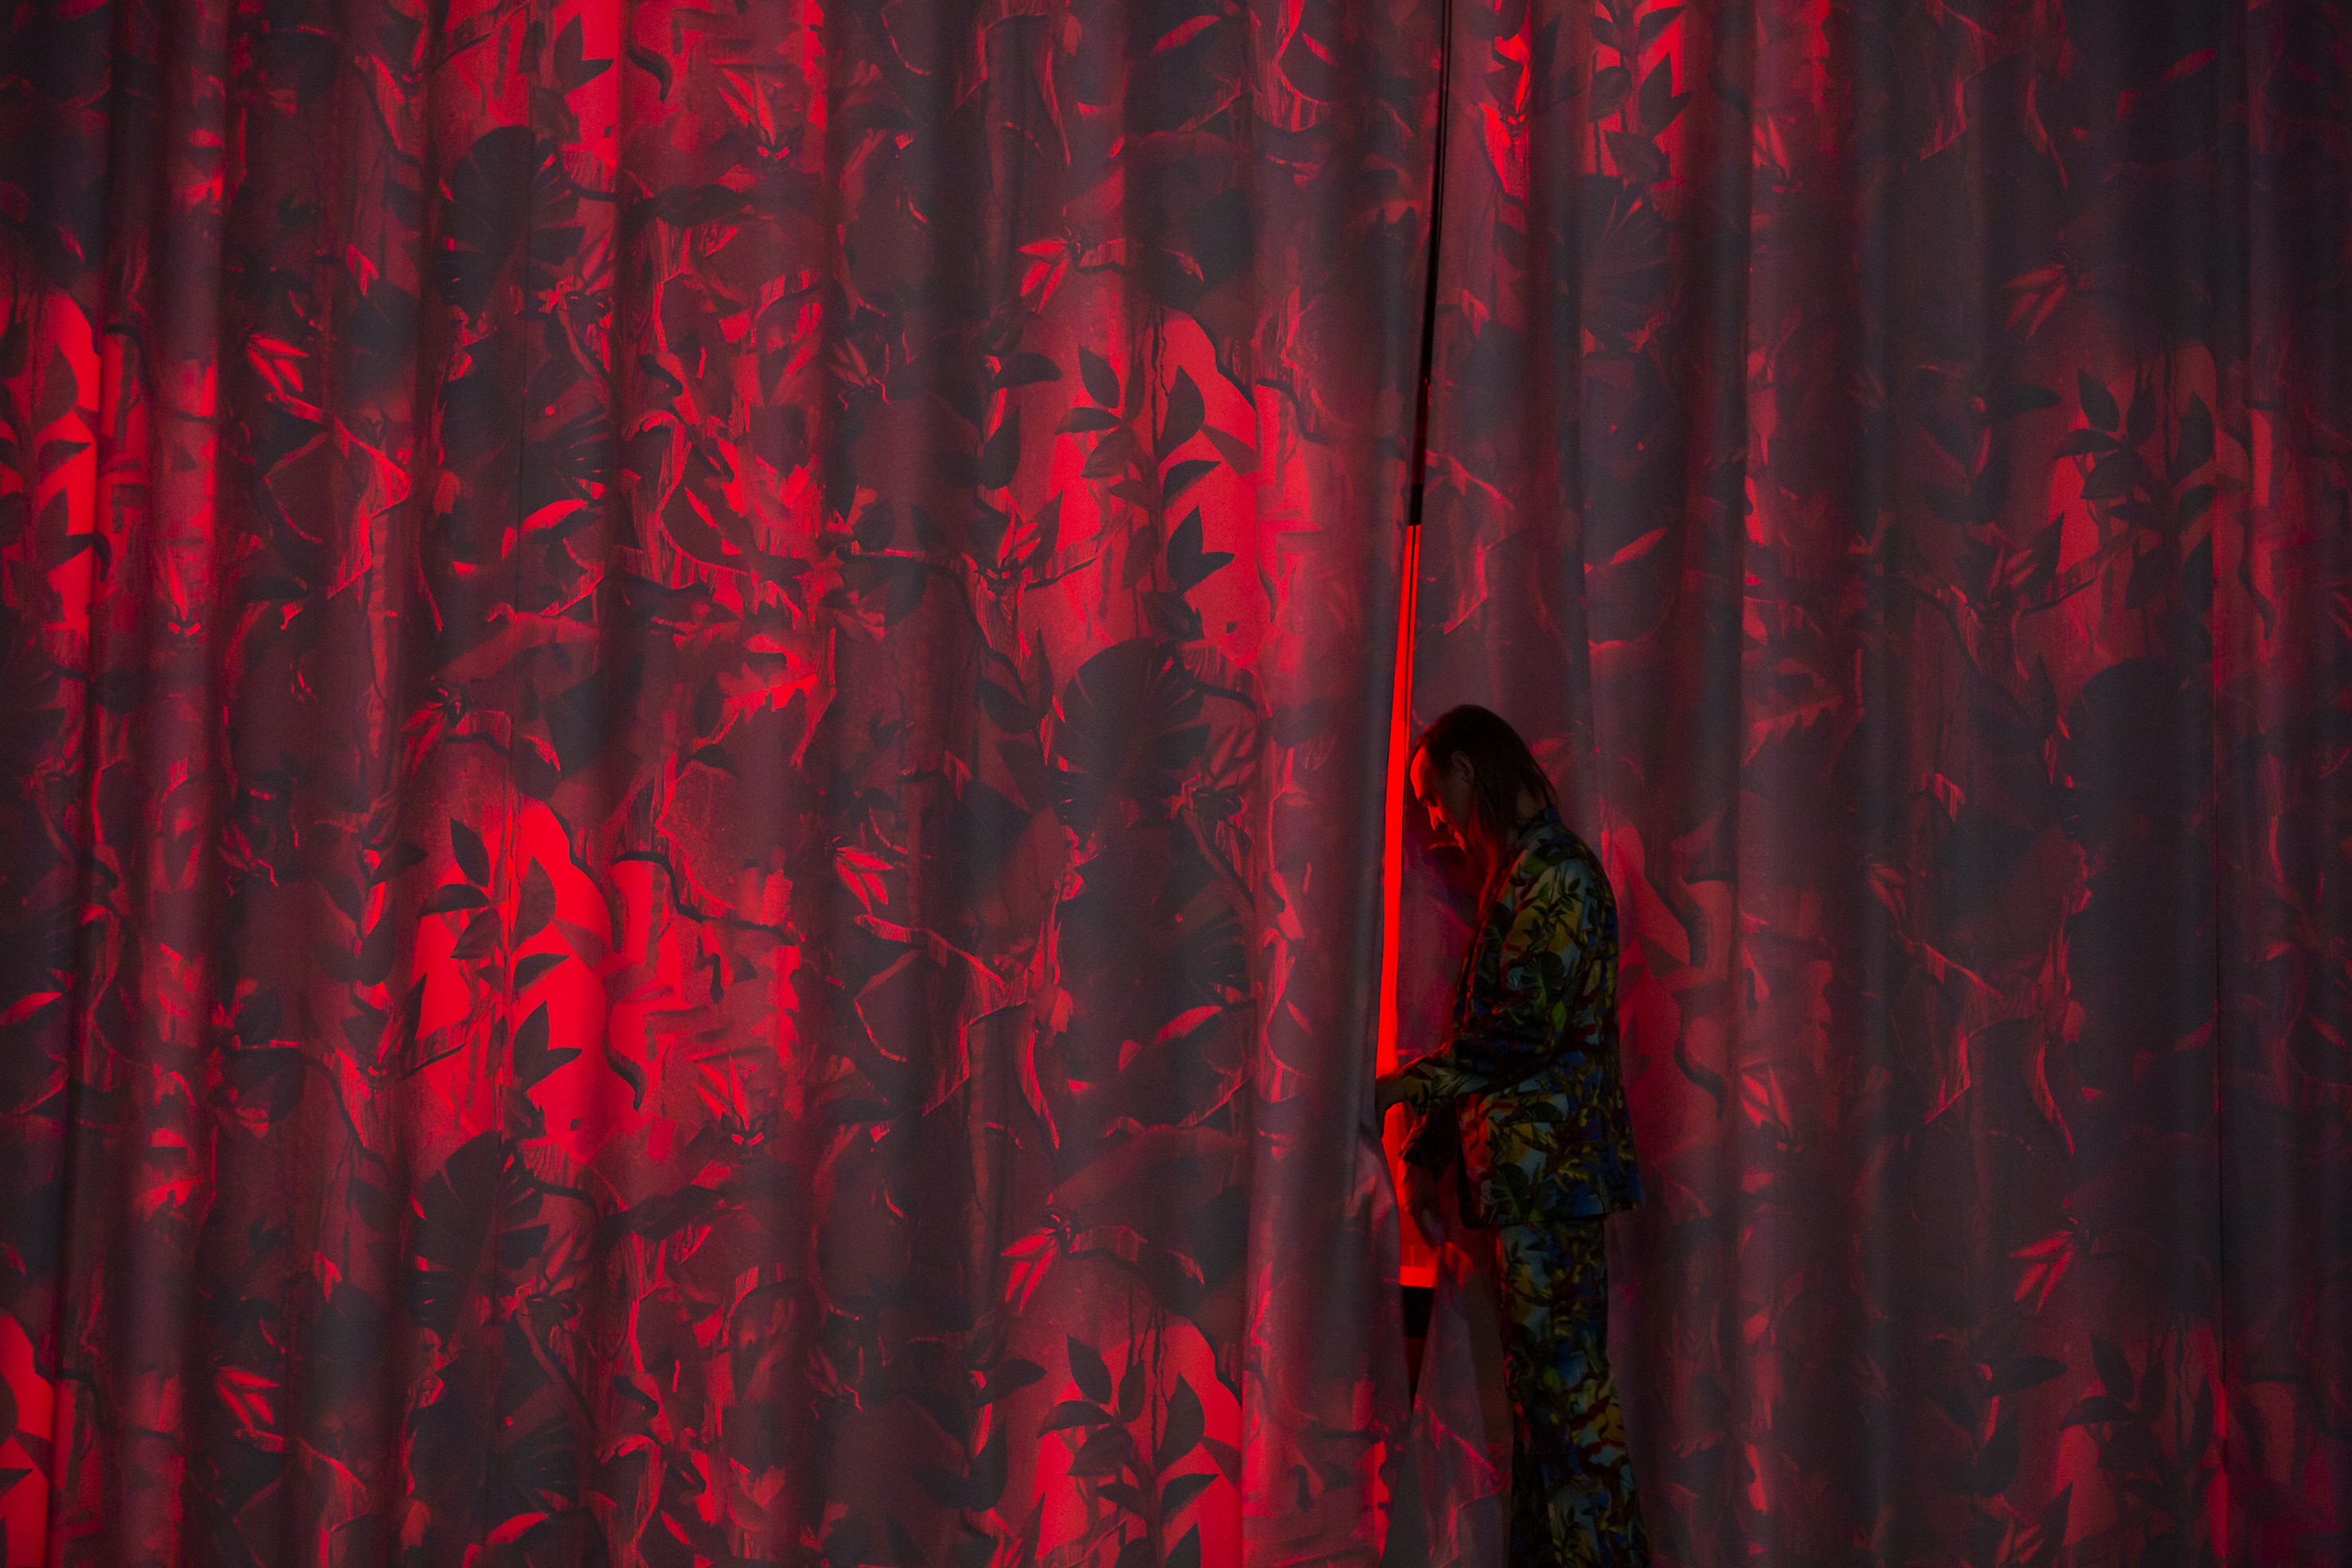 Das Bild besteht aus einem roten Vorhang mit Pflanzenmustern. Vor dem Vorhang steht Diederik Peeters und ist dabei, hinter den Vorhang zu treten.